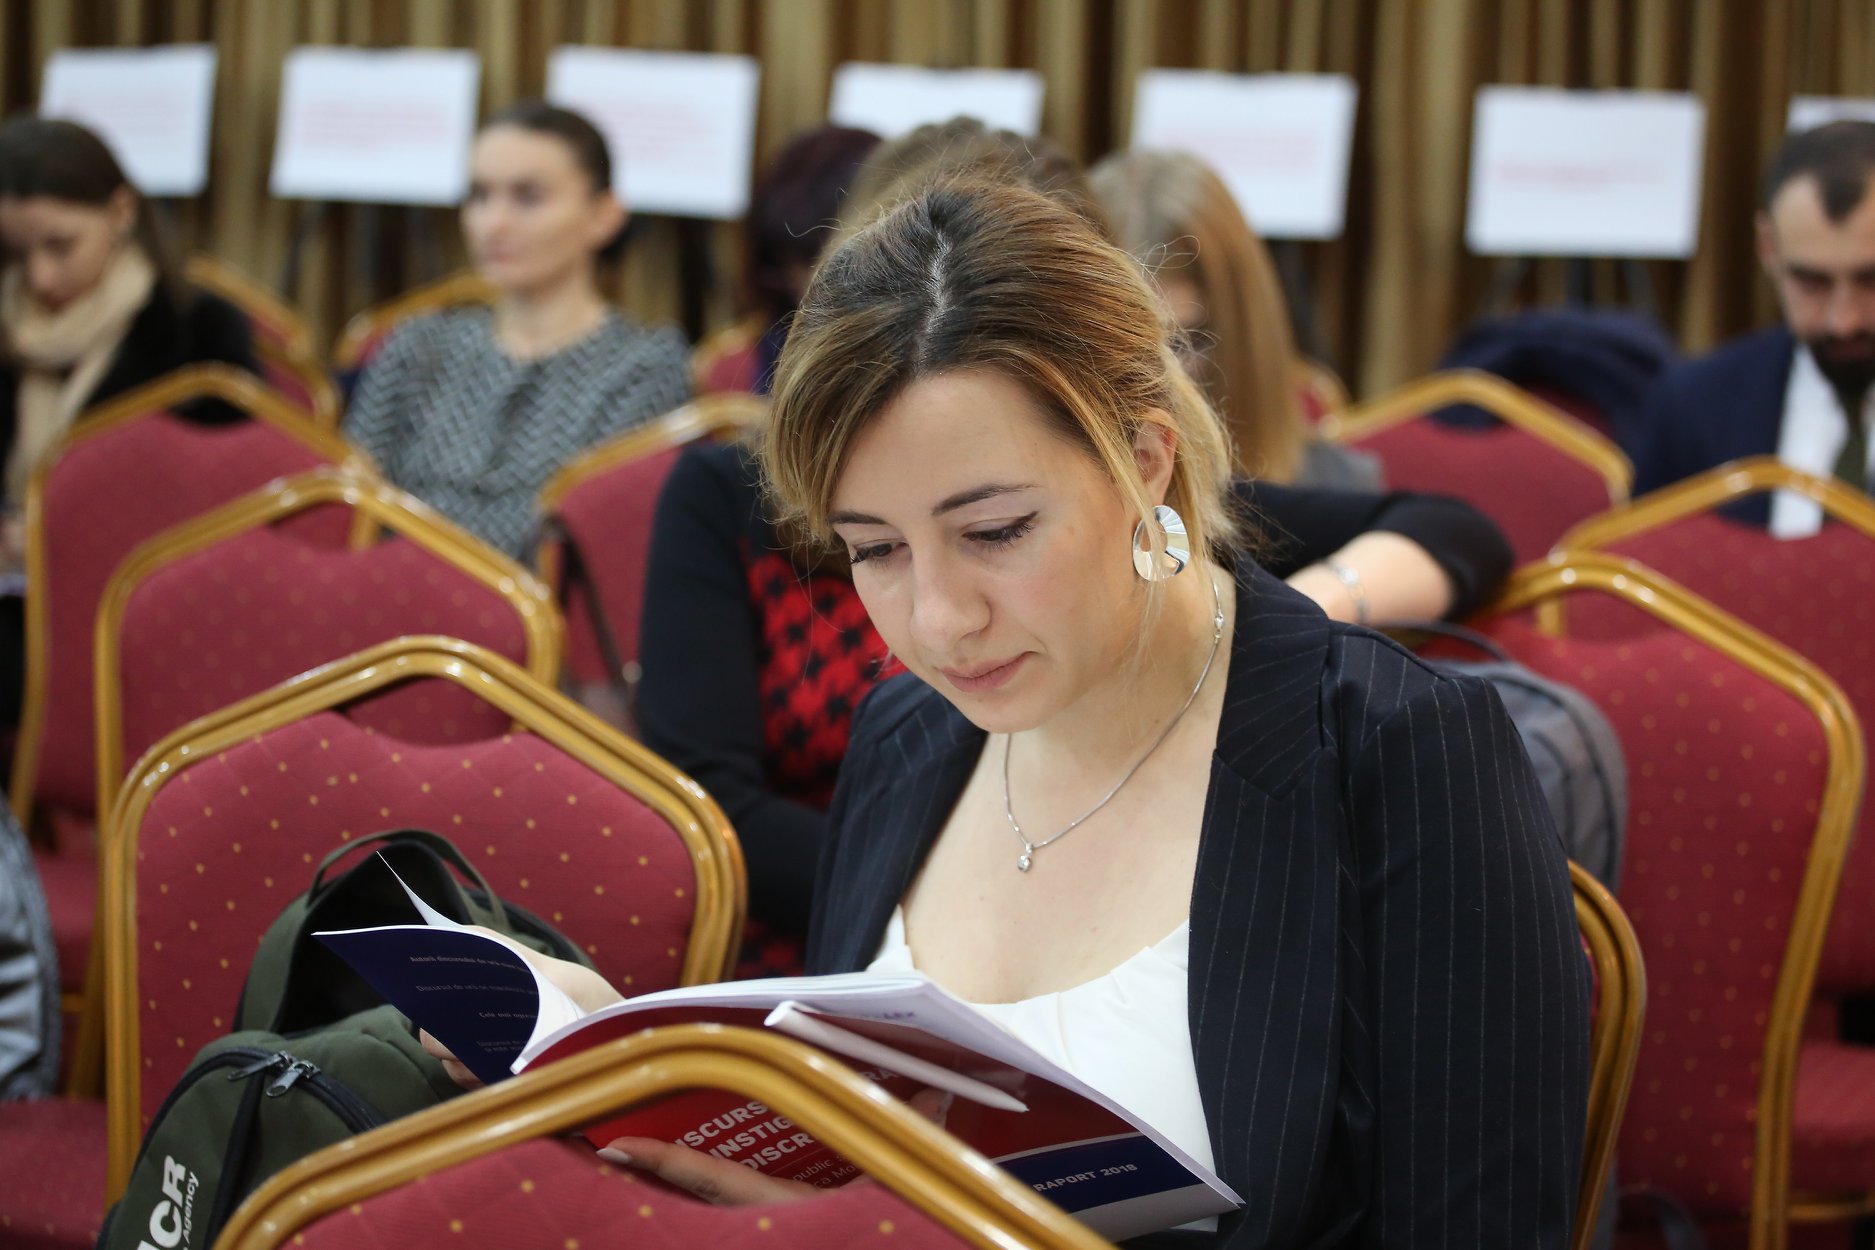 Быть адвокатом в Молдове. 4 истории о правосудии, доходах, стрессе и надеждах